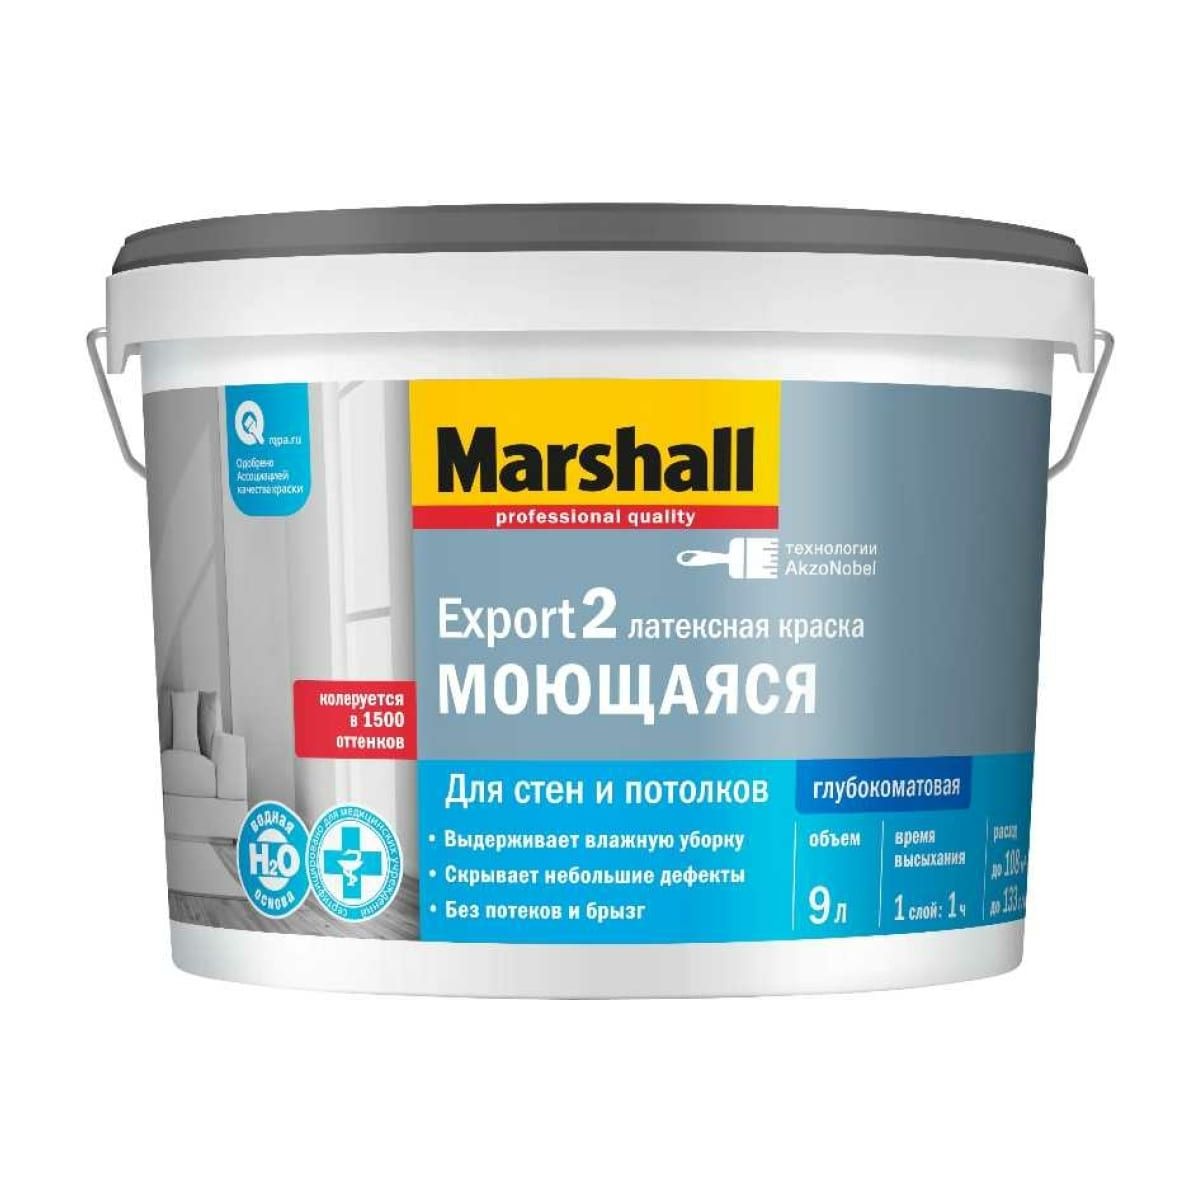 Краска Marshall Export 2 латексная, глубокоматовая, база BW, 9 л краска marshall export 2 латексная глубокоматовая bc 9 л